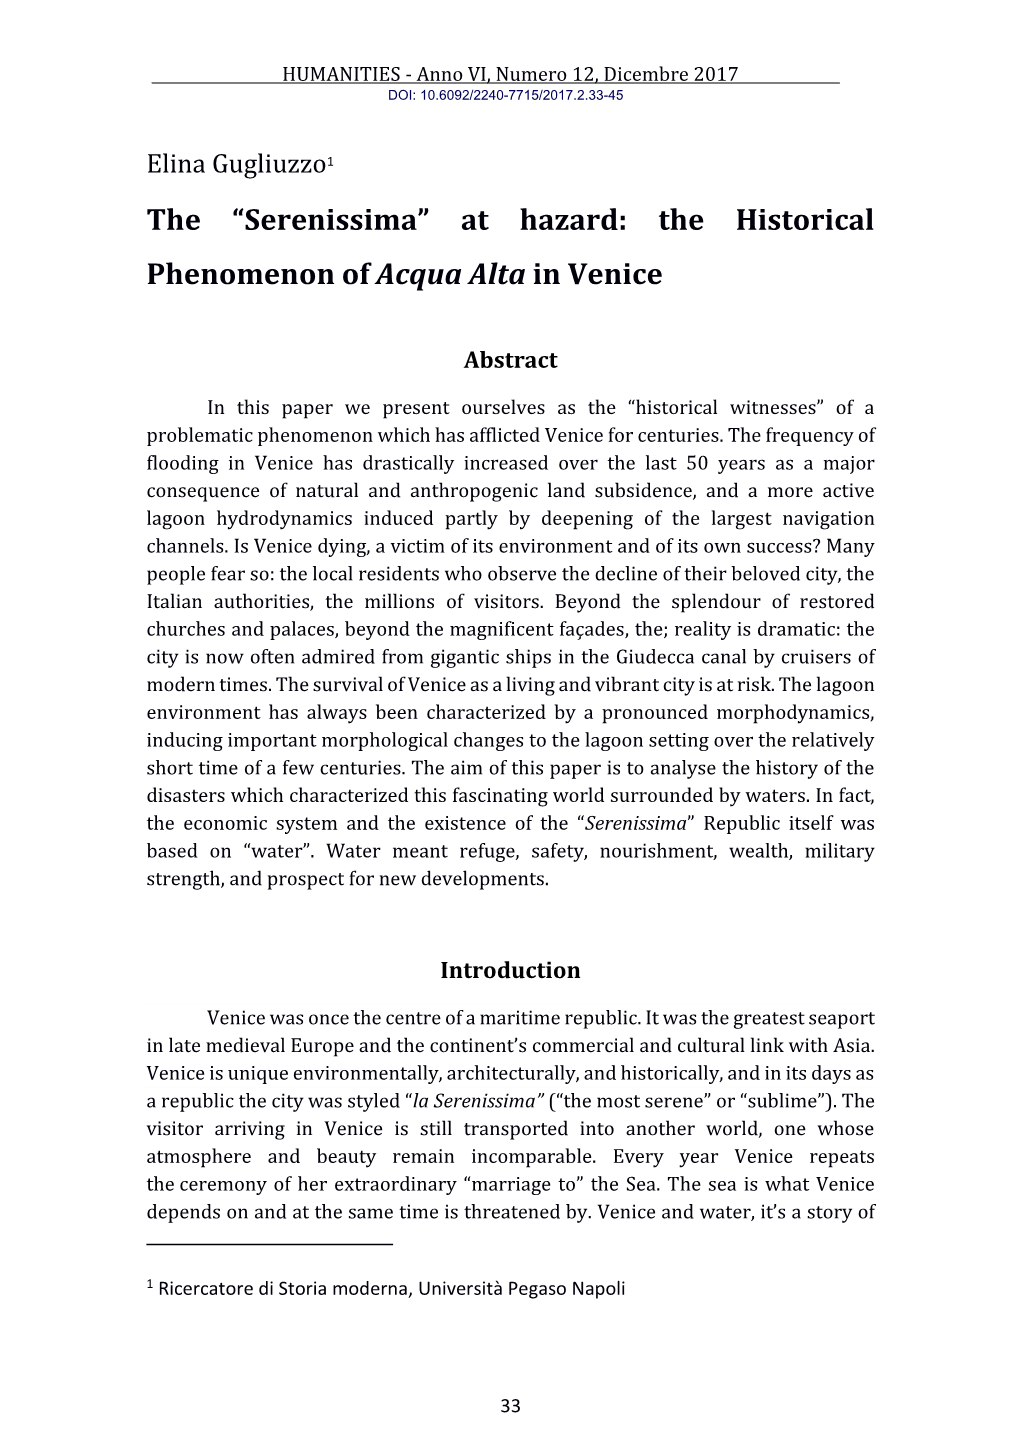 Serenissima” at Hazard: the Historical Phenomenon of Acqua Alta in Venice